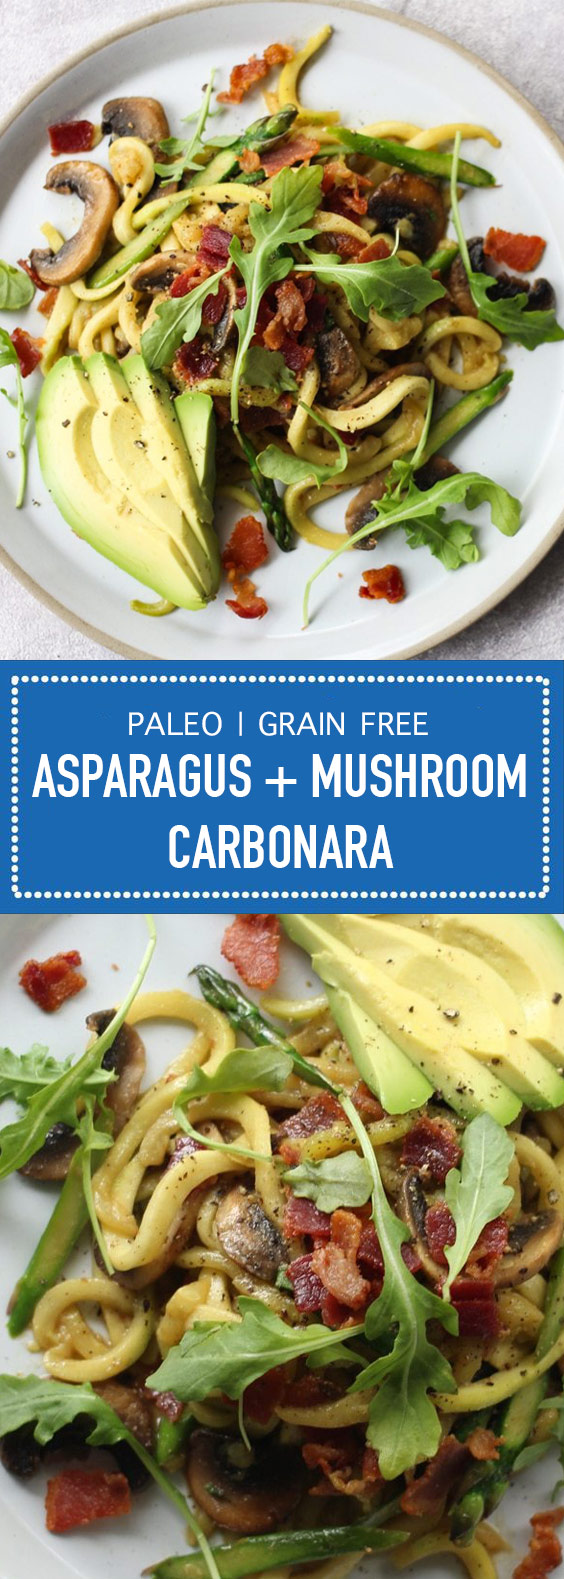 Asparagus + Mushroom Carbonara (Paleo & Grain Free)